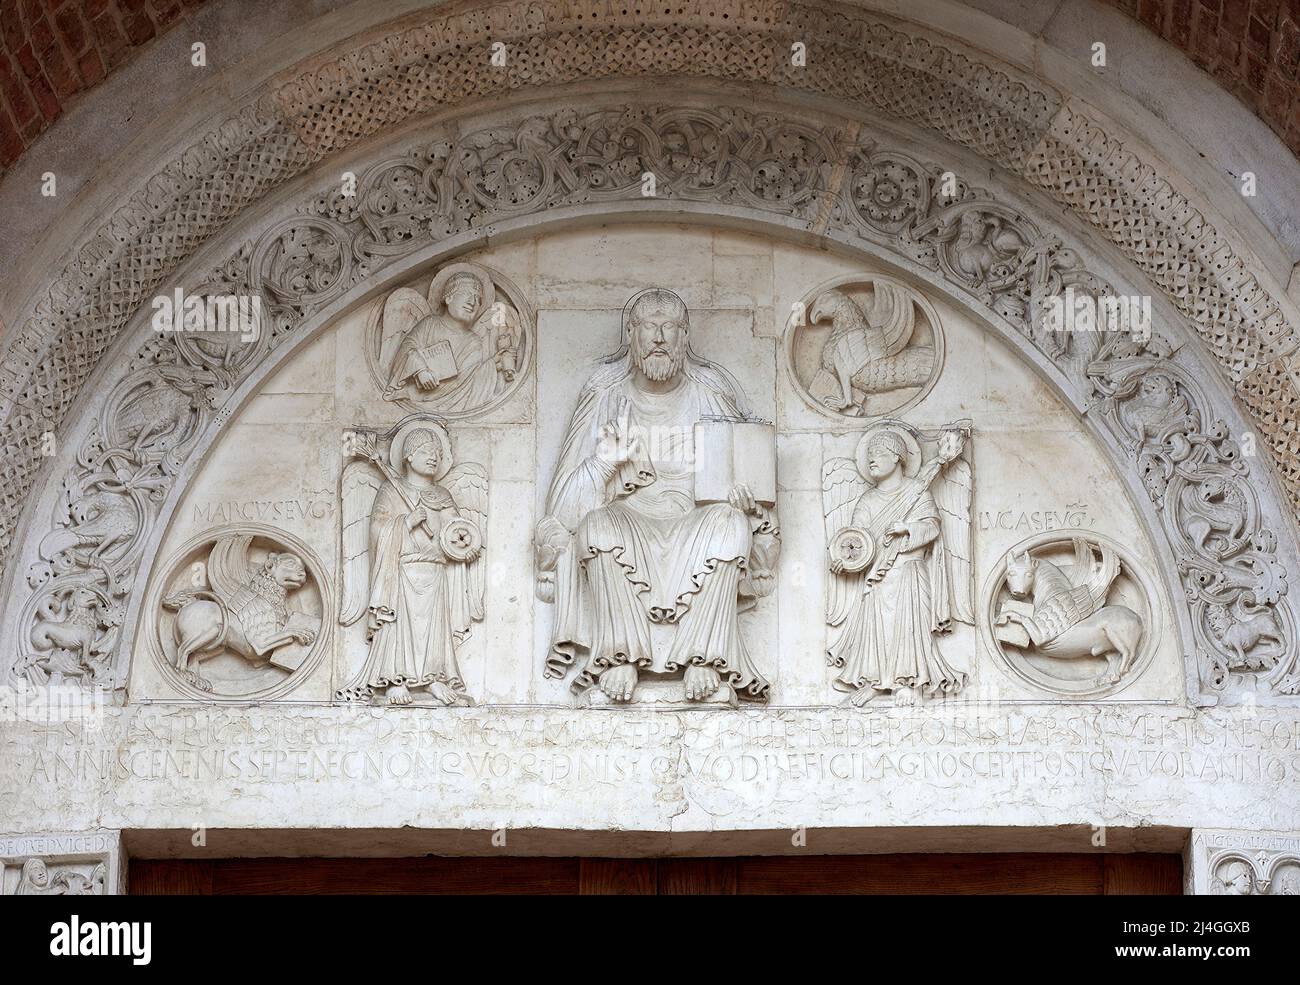 Nonantola (Mo) abbazia di S. Silvestro - Cristo benedicente con i simboli degli evangelisti , lunetta del portale, attribuita a Wiligelmo Stock Photo